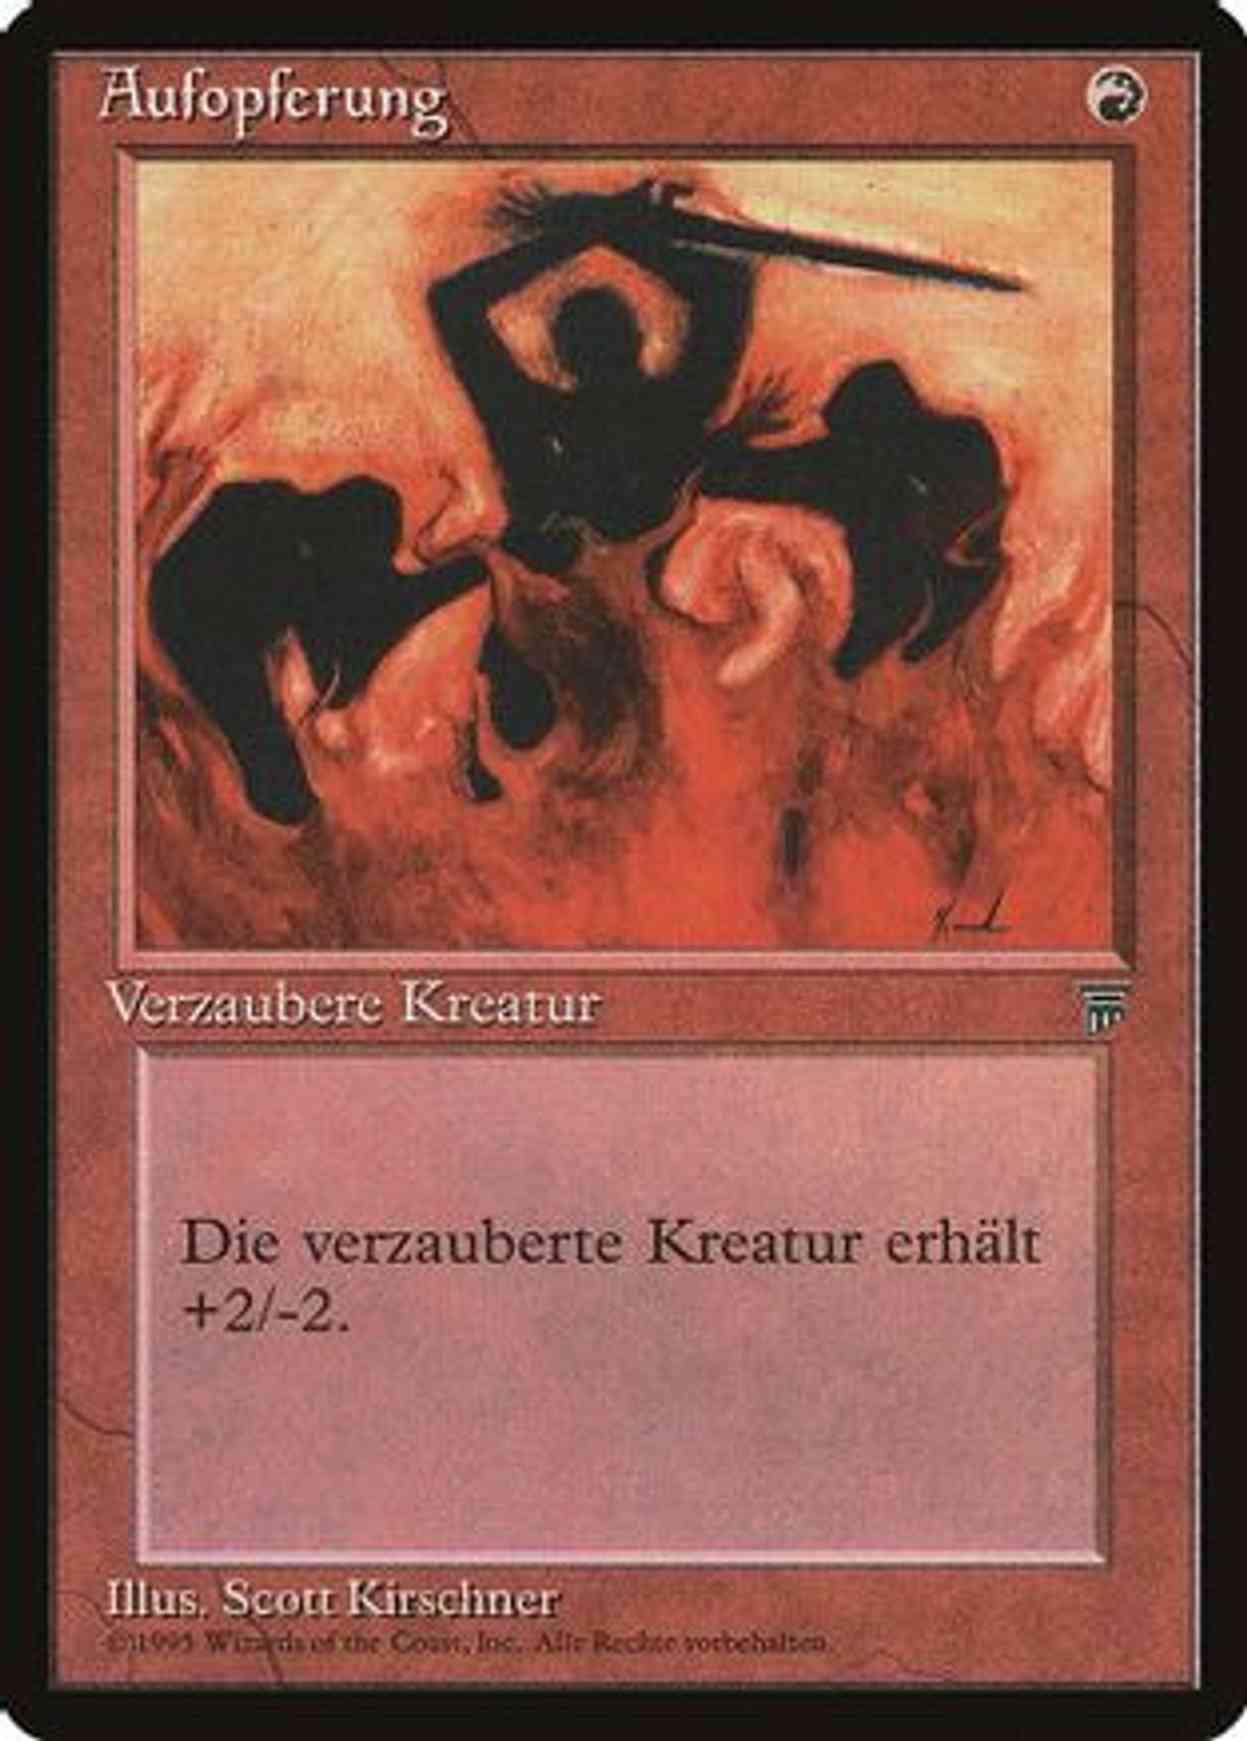 Immolation (German) - "Aufopferung" magic card front